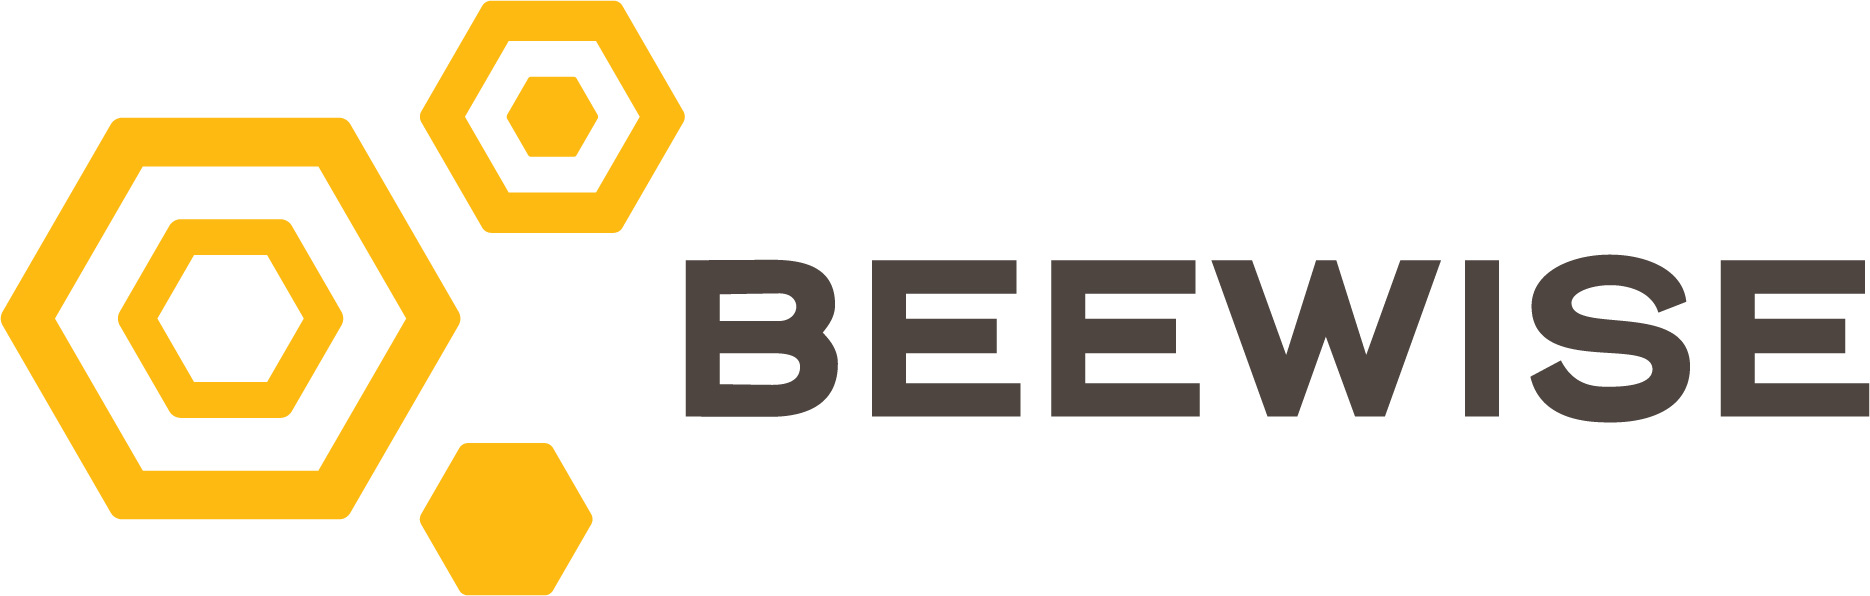 Beewise logo